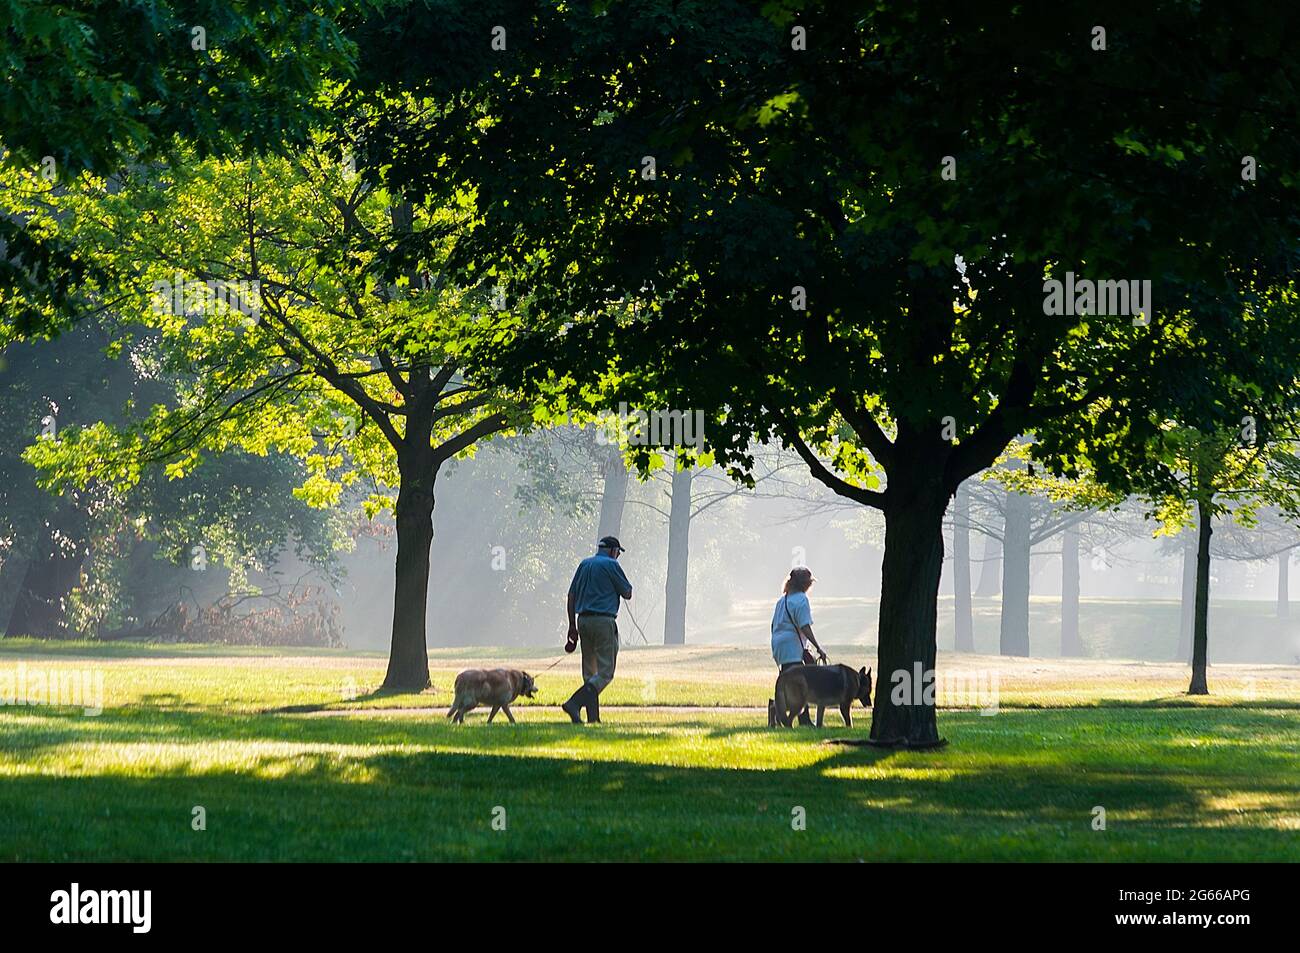 Zwei Senioren, ein Mann und eine Frau, mit ihren Hunden in einem schönen Park, Ontario, Kanada. Leichter Nebel schafft eine luftige Kulisse für die dichten Bäume. Stockfoto